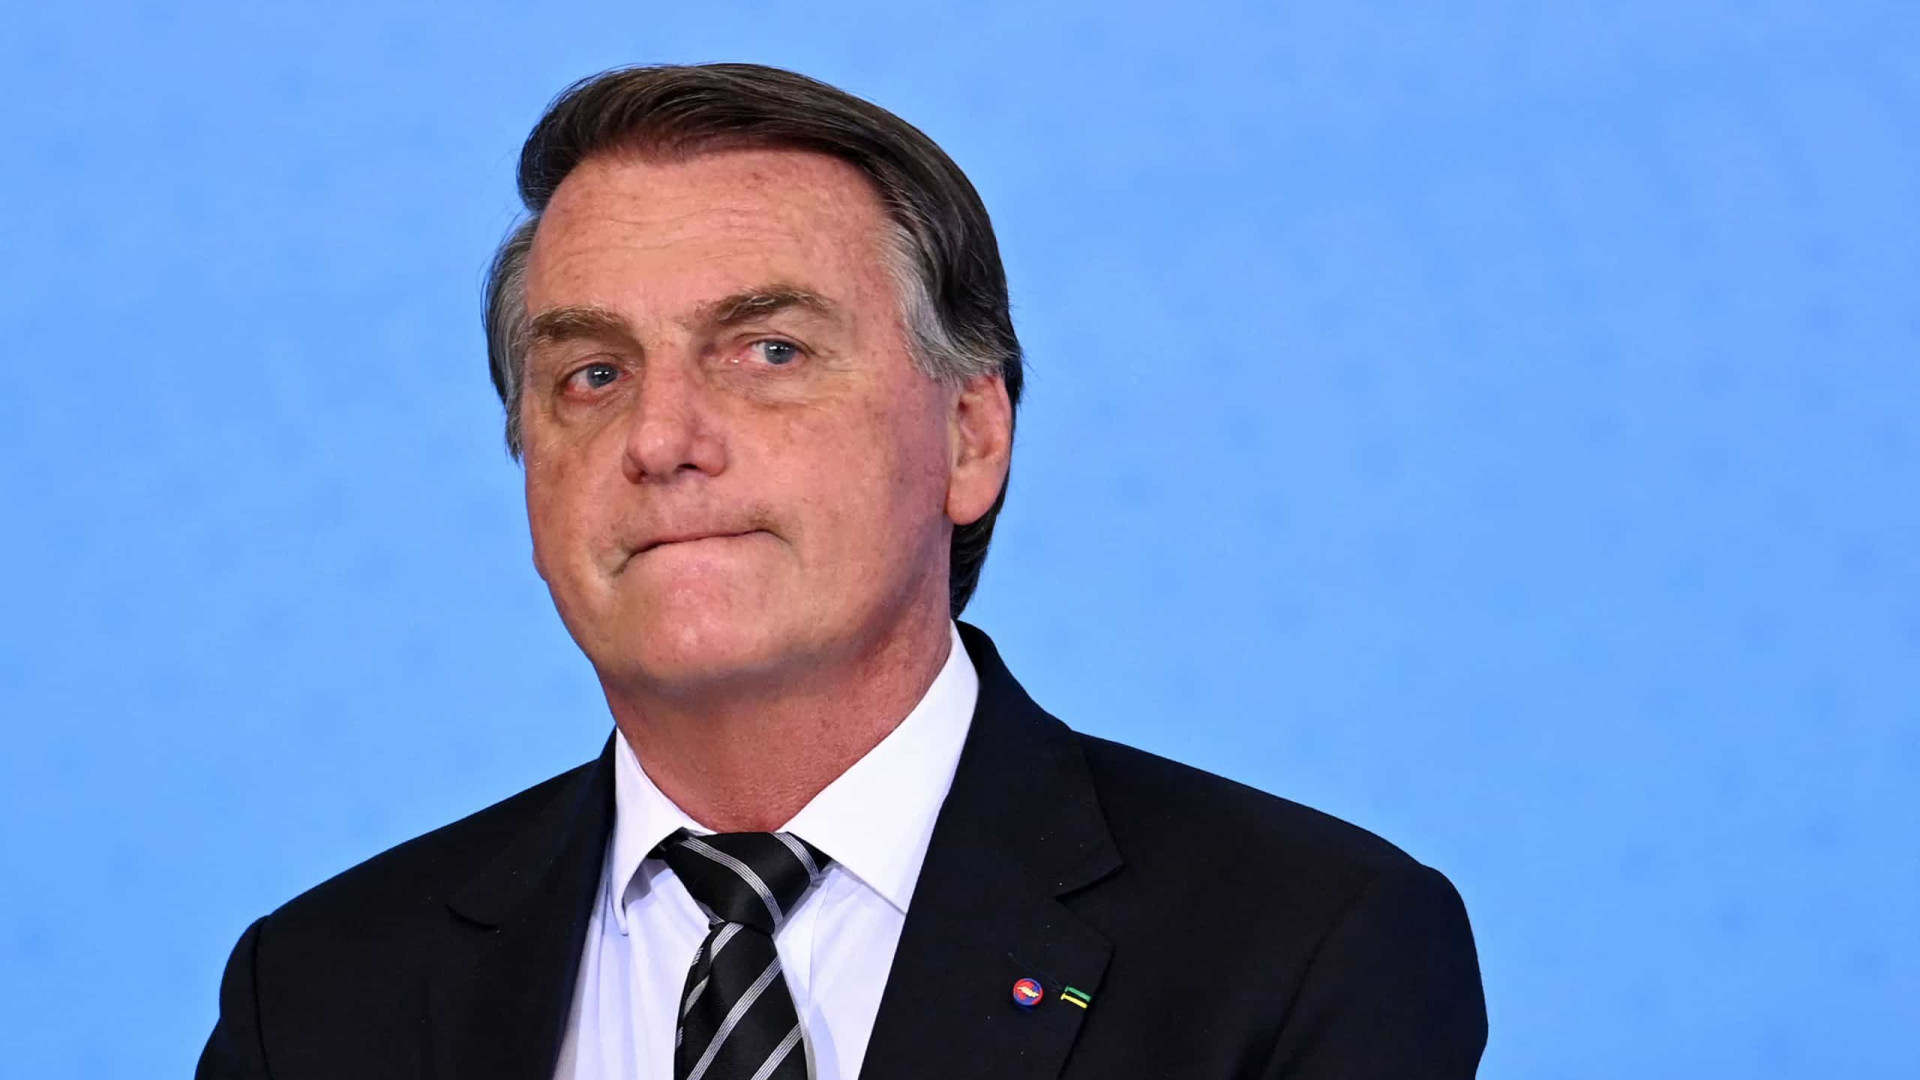 Presidente Jair Bolsonaro diz que PEC dos Precatórios não é calote